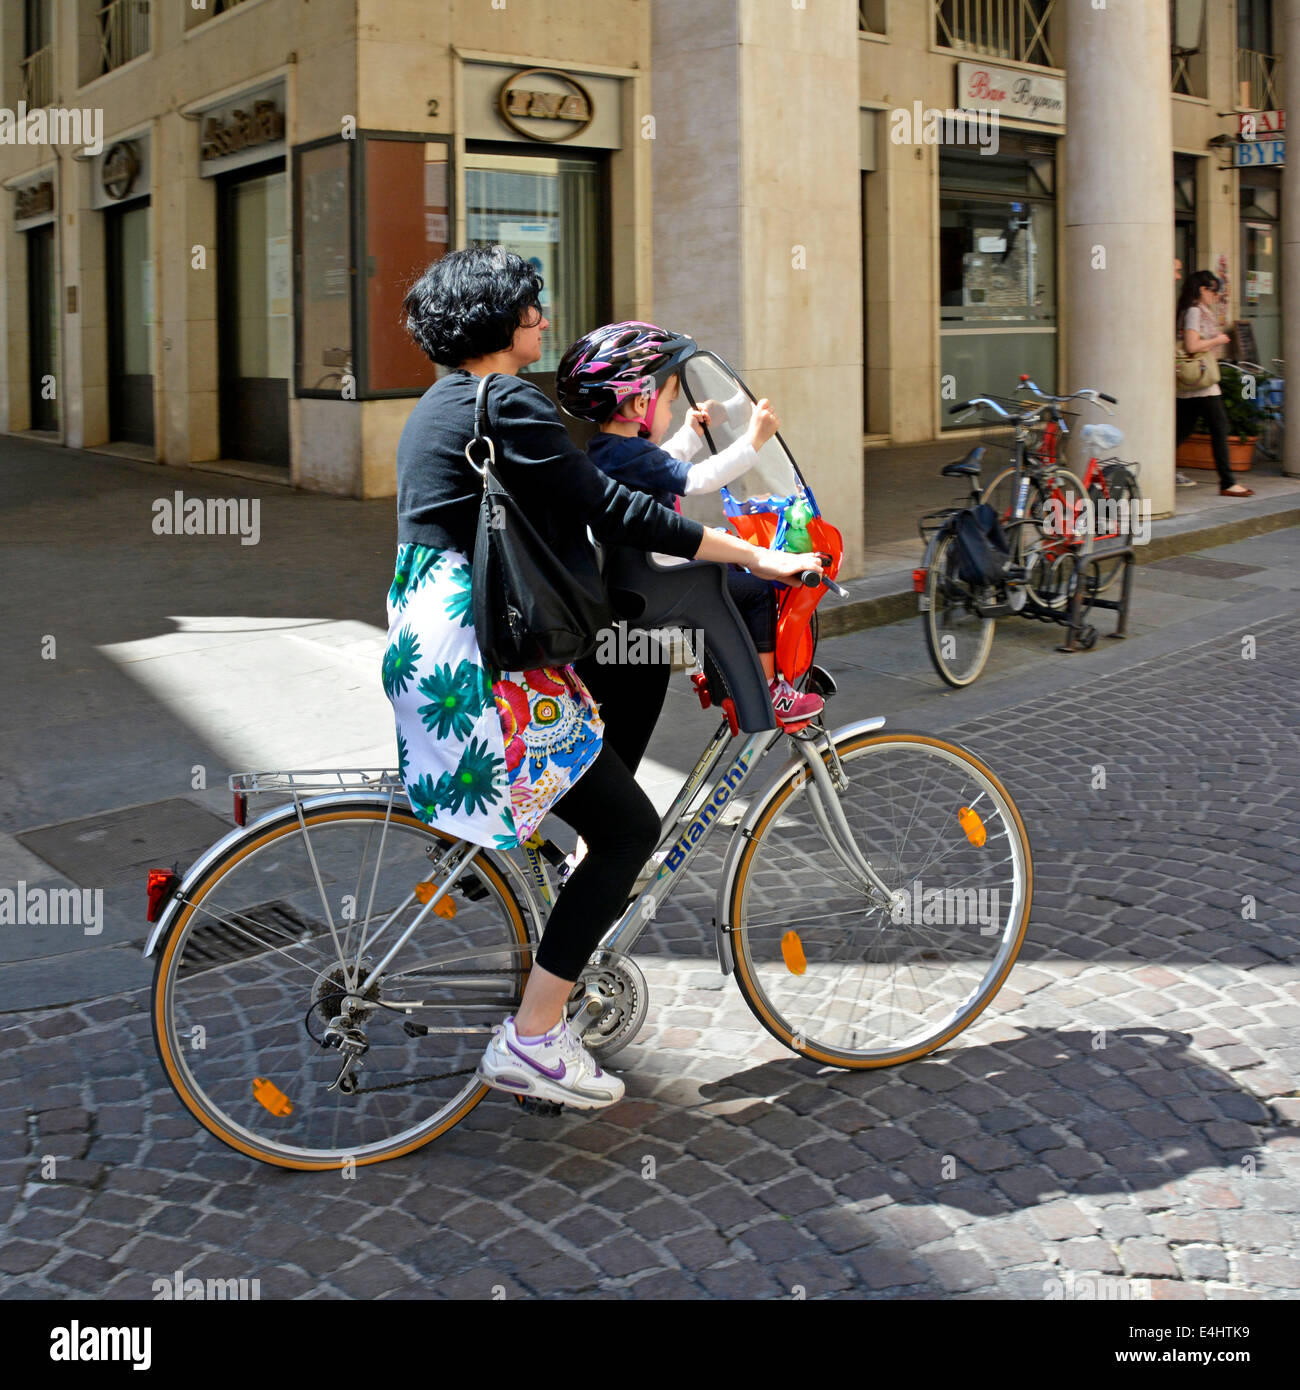 Frau (Mutter?) mit dem Fahrrad mit Kind sitzen halten Windschutzscheibe und  mit Bell Helm Stockfotografie - Alamy